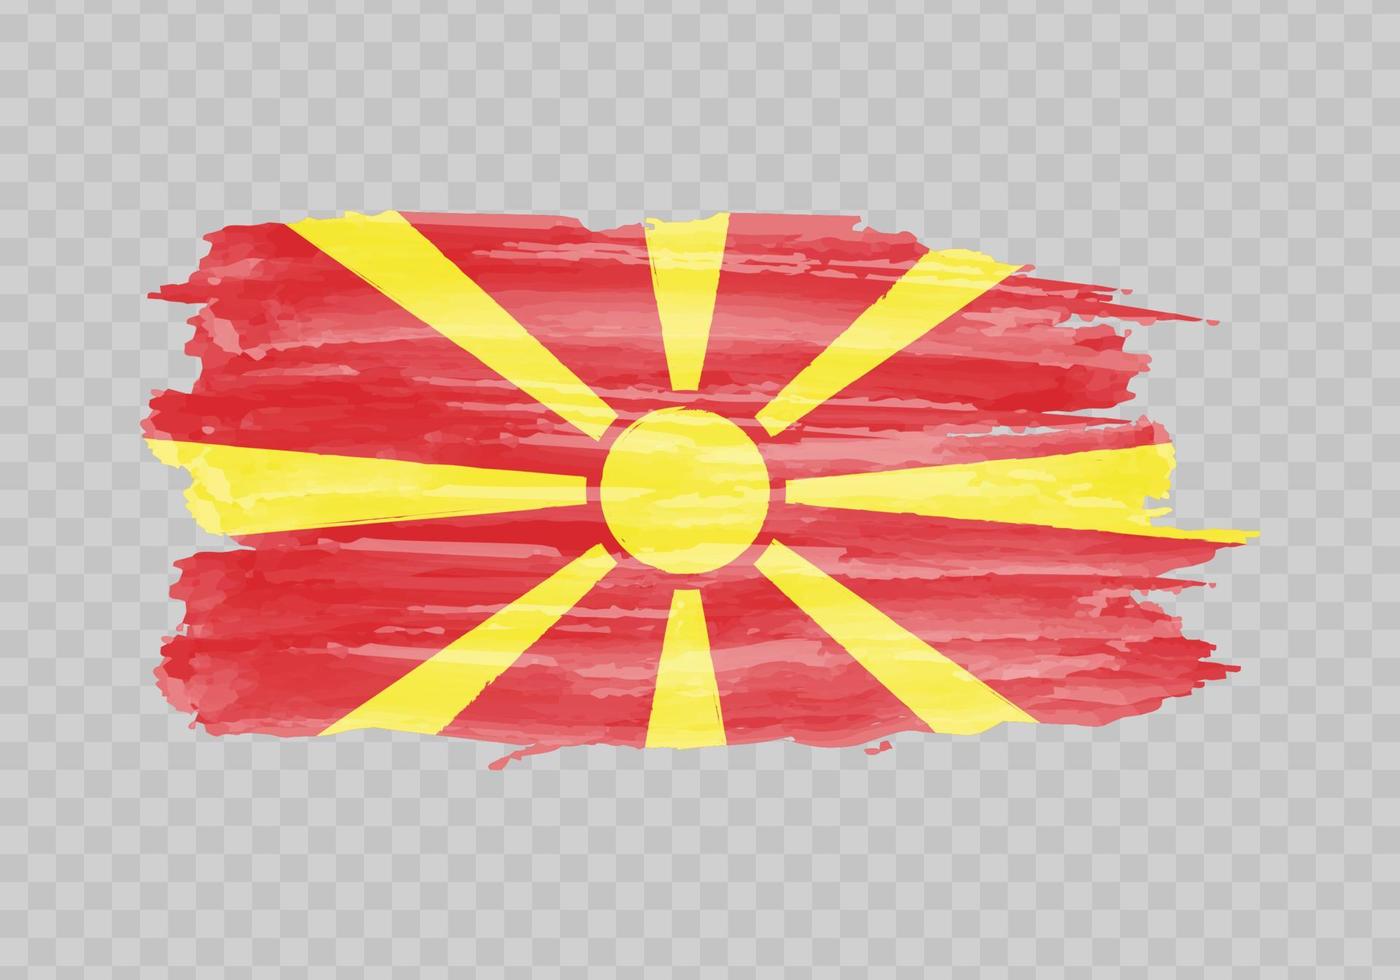 Aquarell Gemälde Flagge von Norden Mazedonien vektor